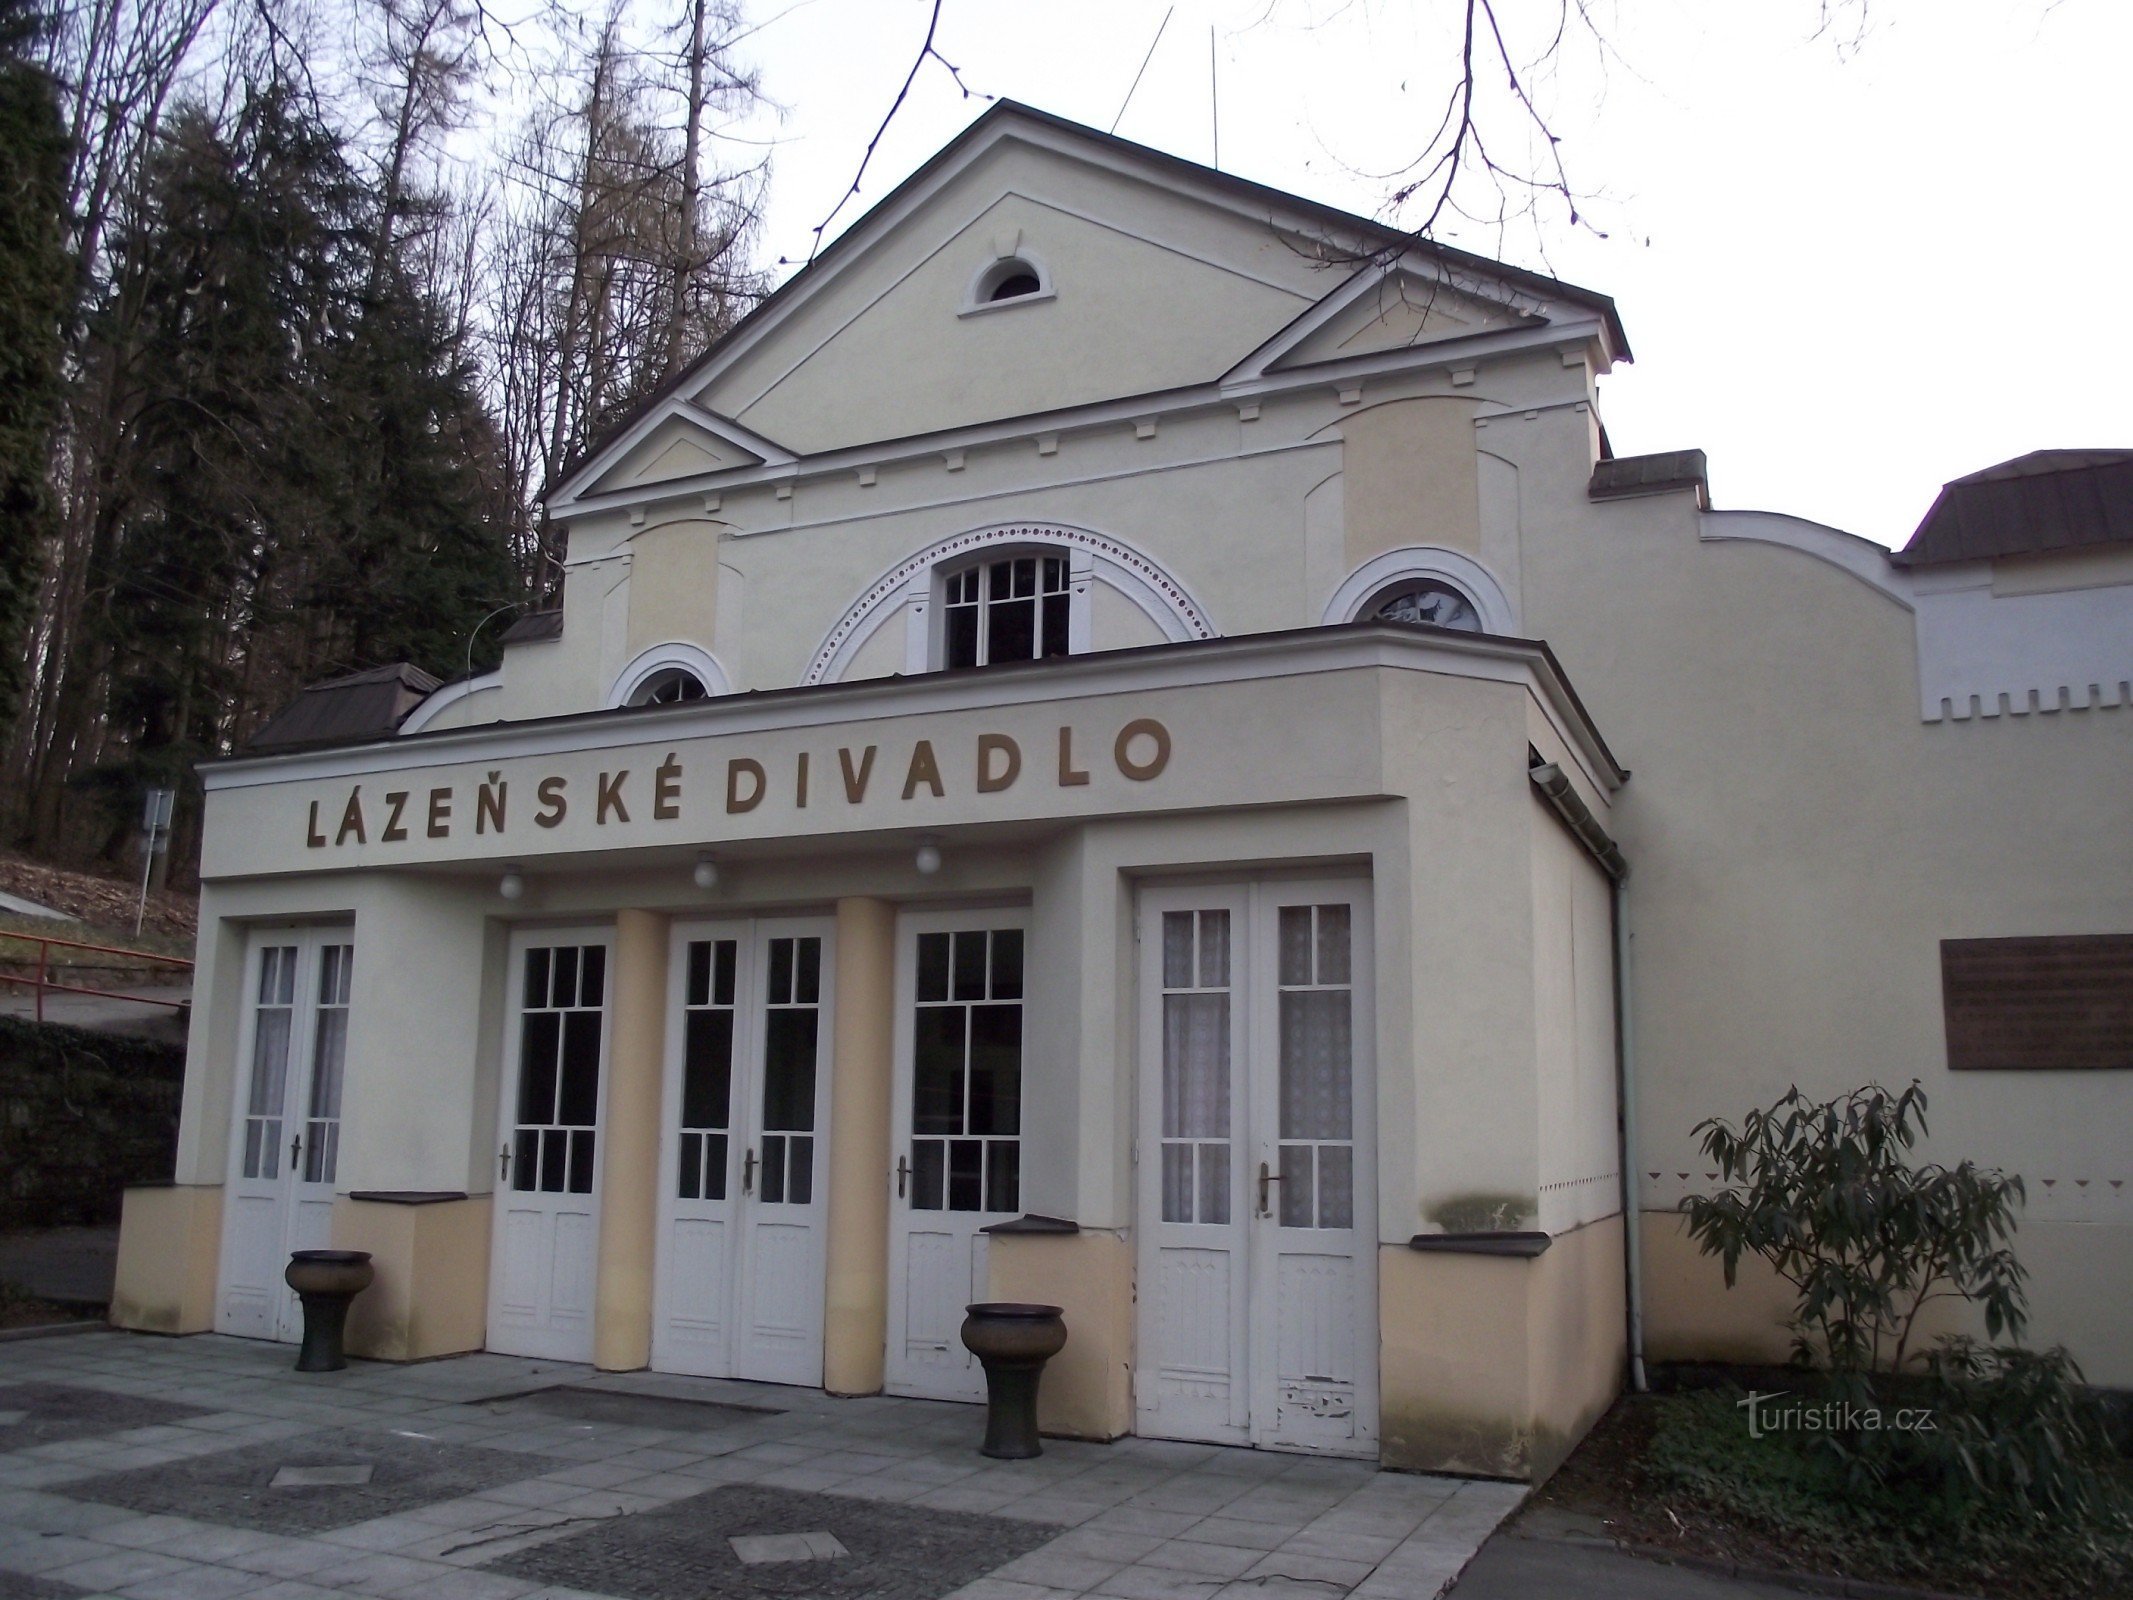 Luhačovice – Spa-teatteri